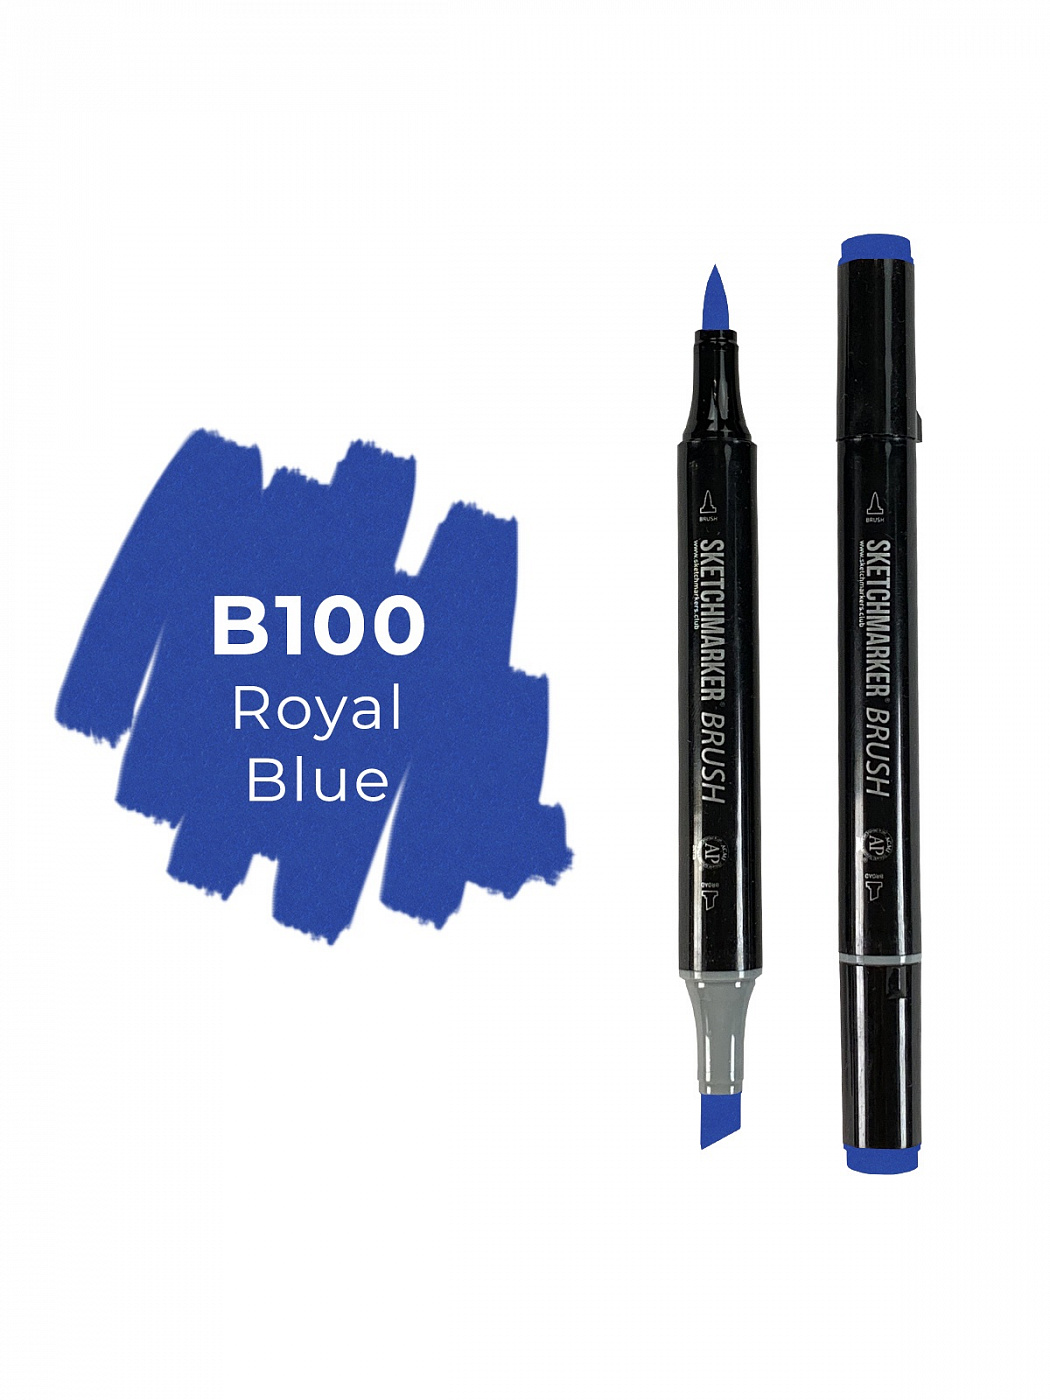 Маркер двухсторонний на спиртовой основе Sketchmarker Brush Цвет Королевский синий маркер с нитроэмалью синий lekon 011604